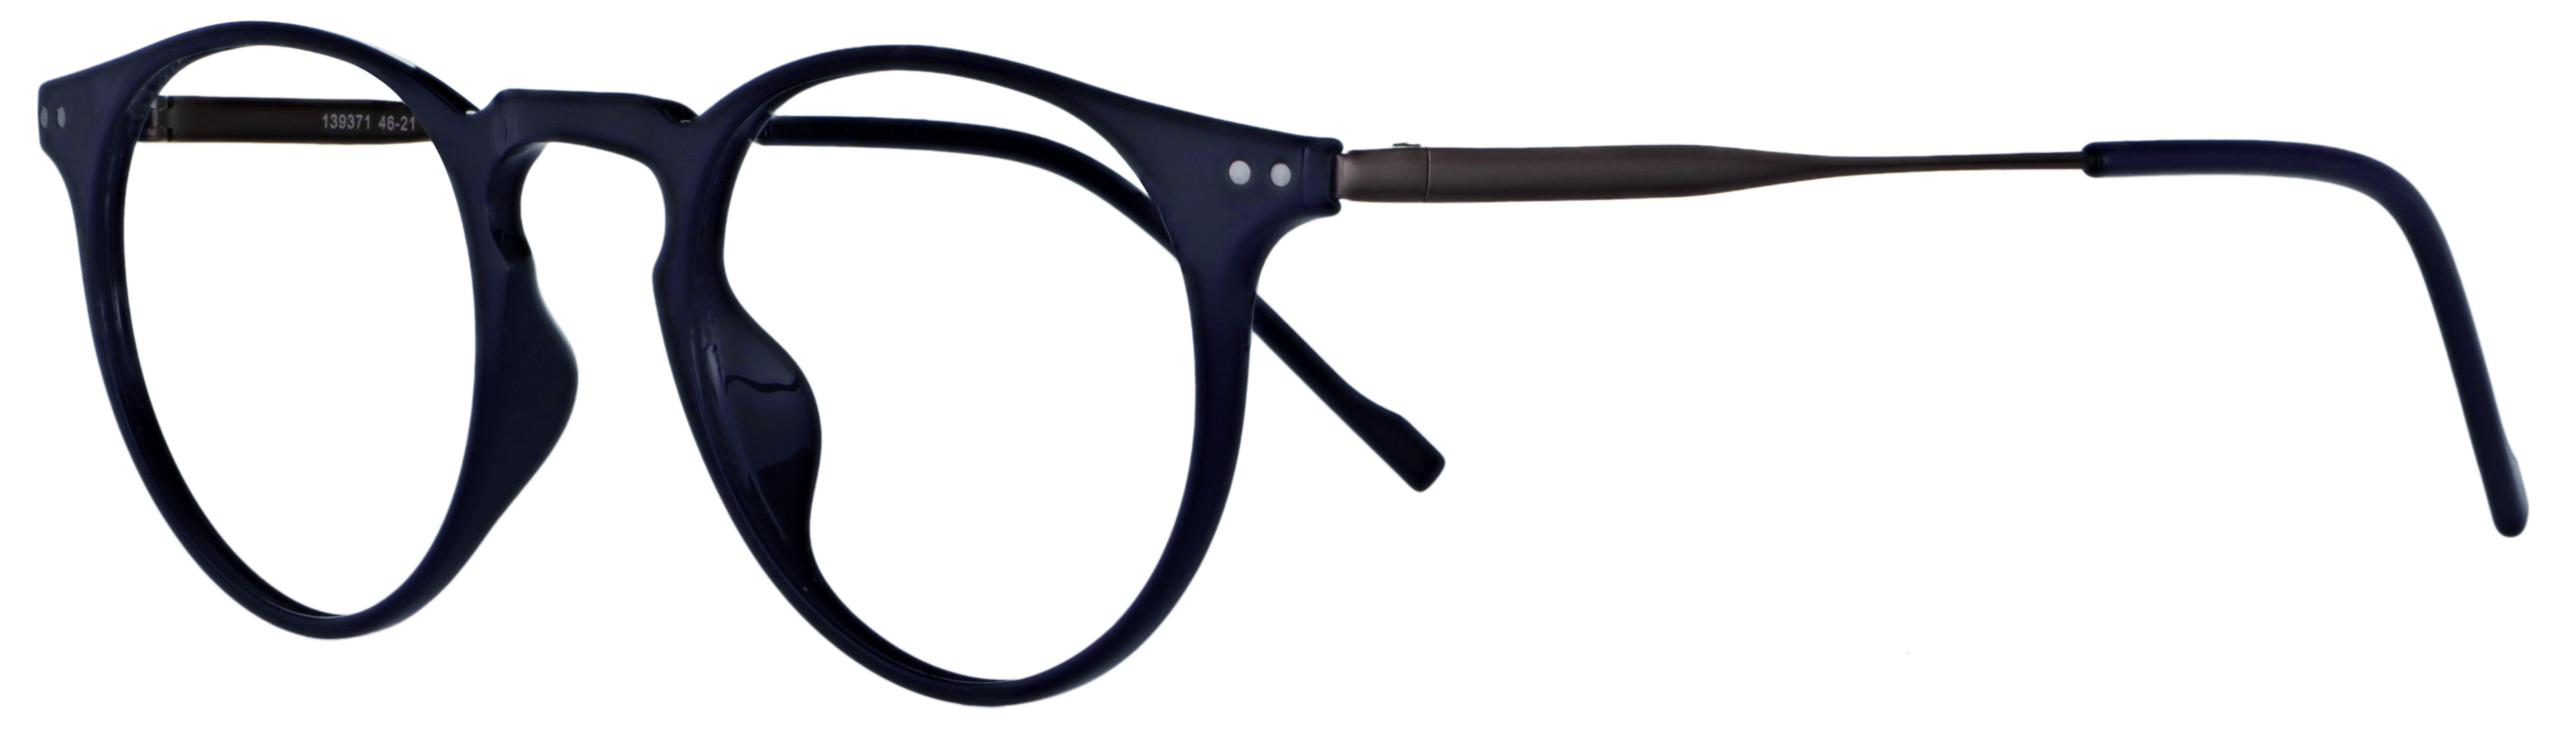 Das Bild zeigt die Korrektionsbrille 139371 von der Marke Abele Optik in dunkelblau/Bügel:dunkelgrau.